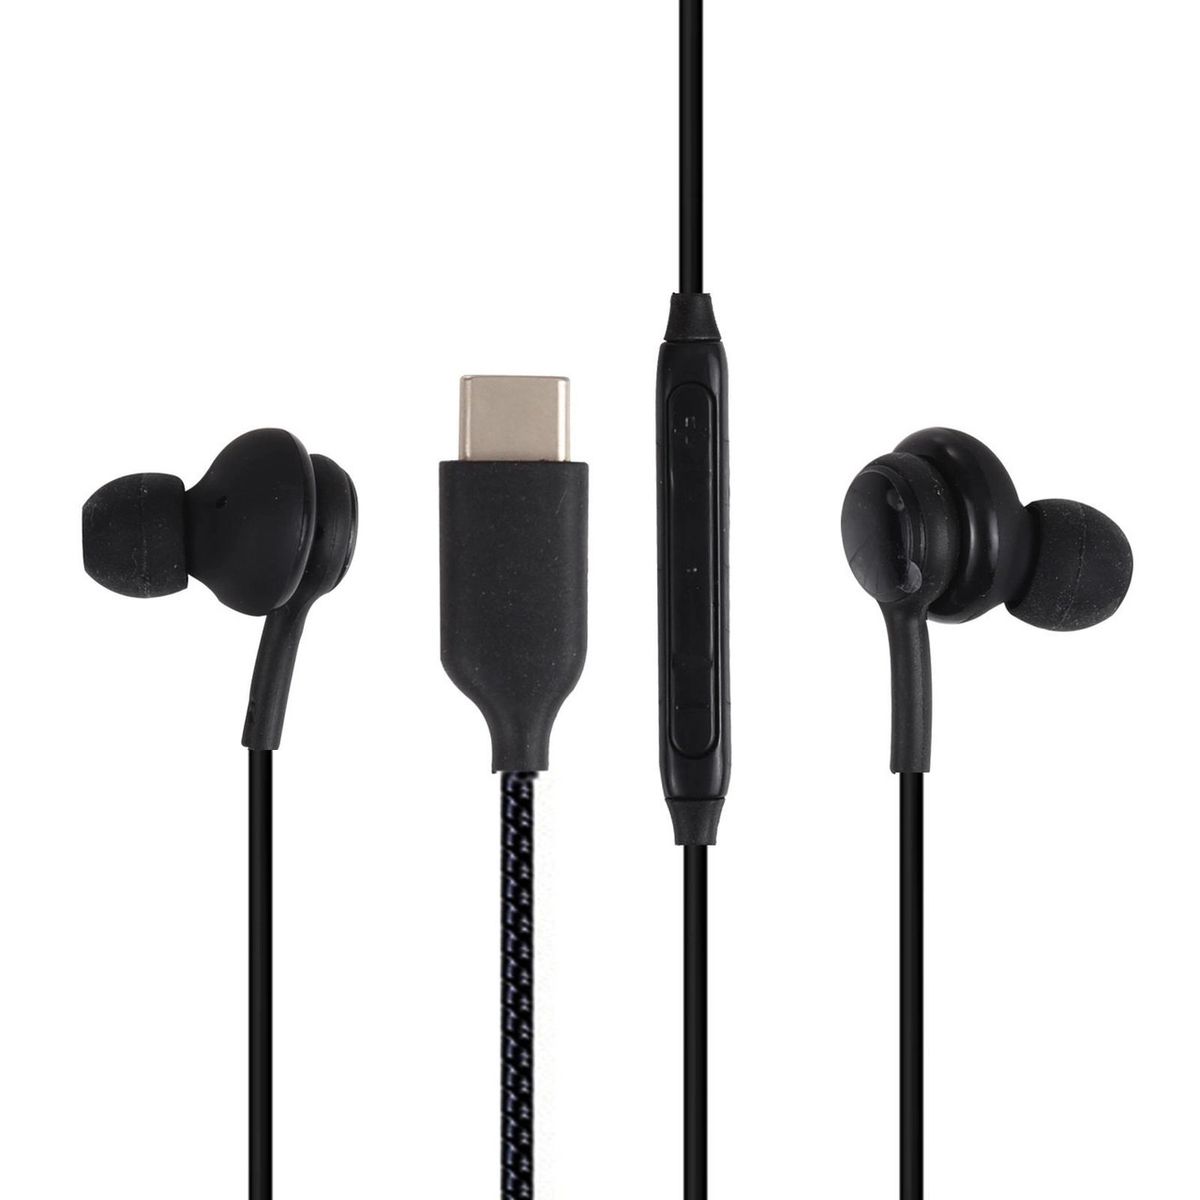 Type C Earphones / Headphones With Microphone -Black | Shop Today. Get ...